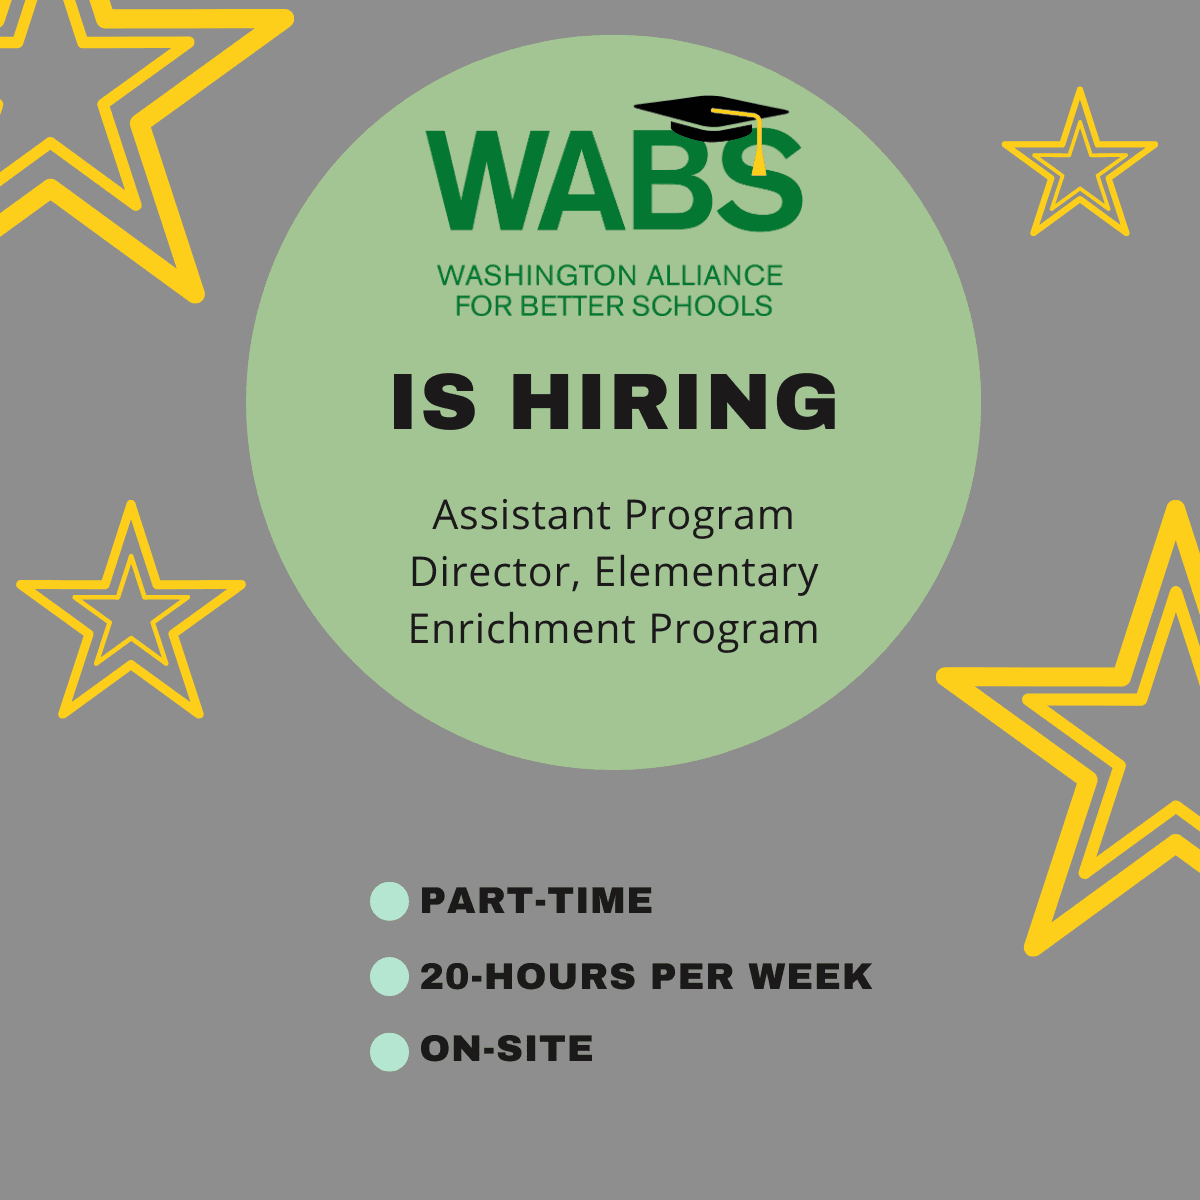 WABS is Hiring an Assistant Program Director